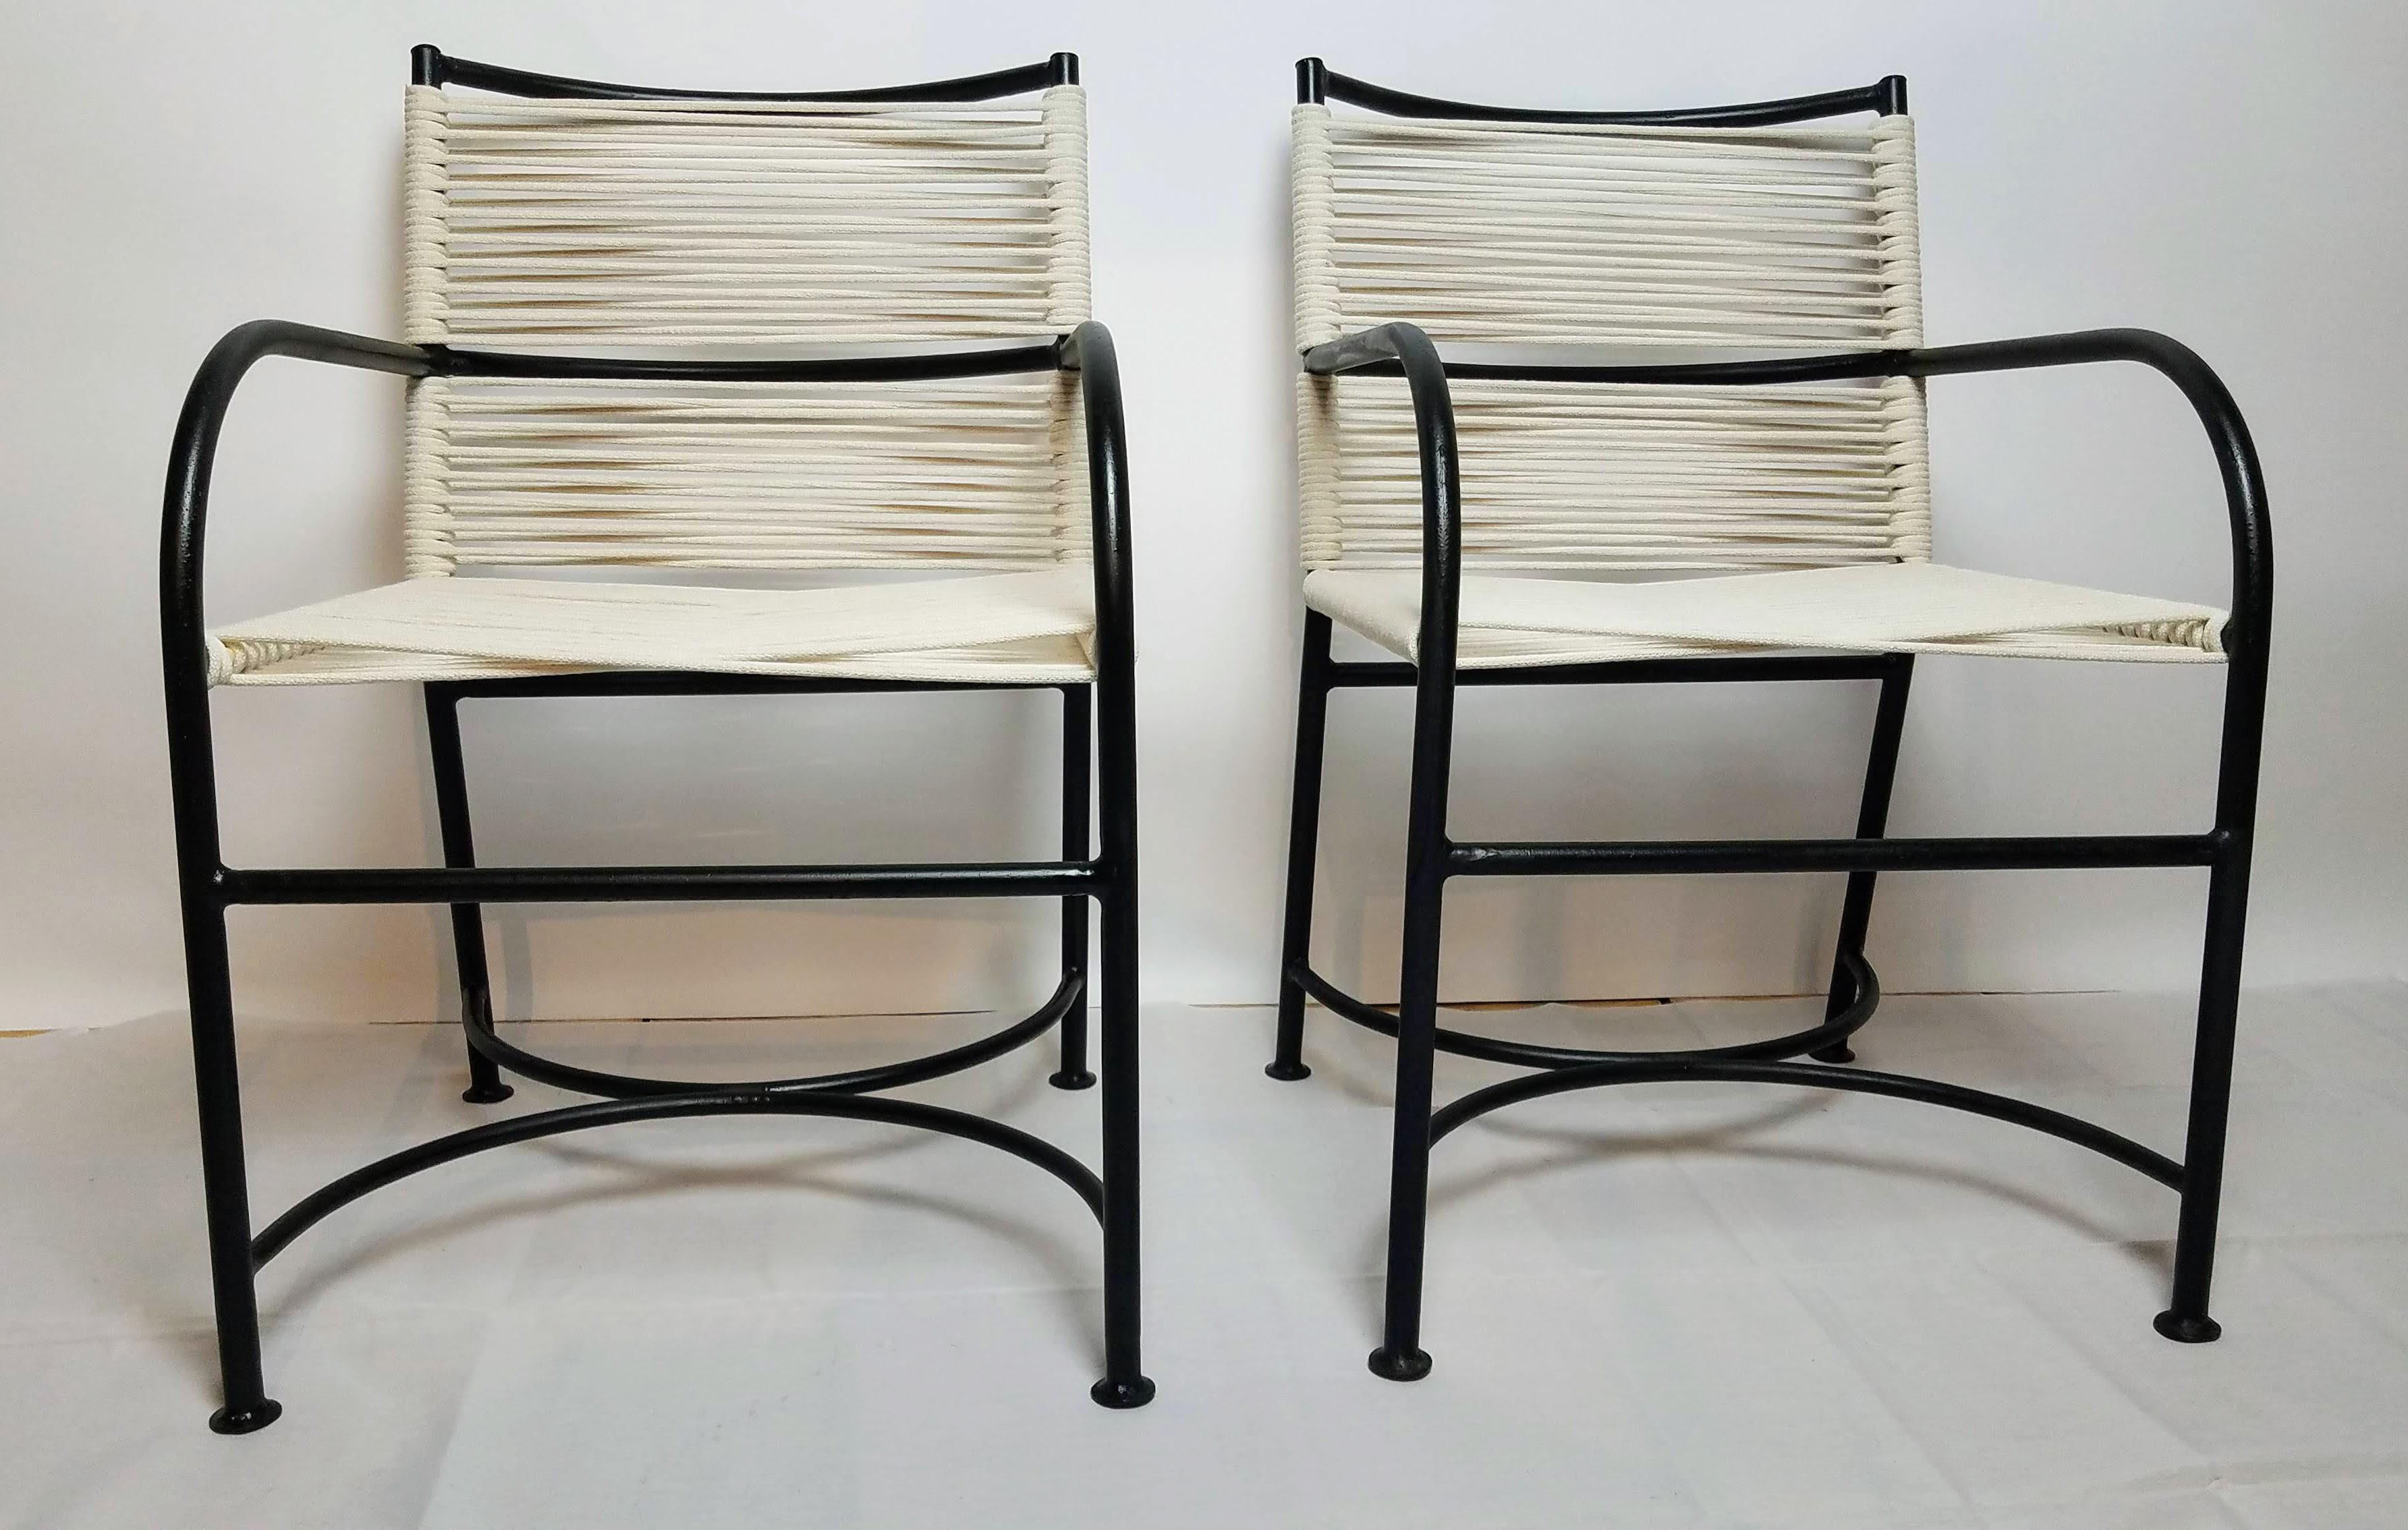 Paar Robert Lewis Stahlrohrsessel um 1940, handgefertigt in Santa Barbara, CA. . 
Klassische Stühle für draußen.
Die Stühle sind in sehr gutem Zustand.